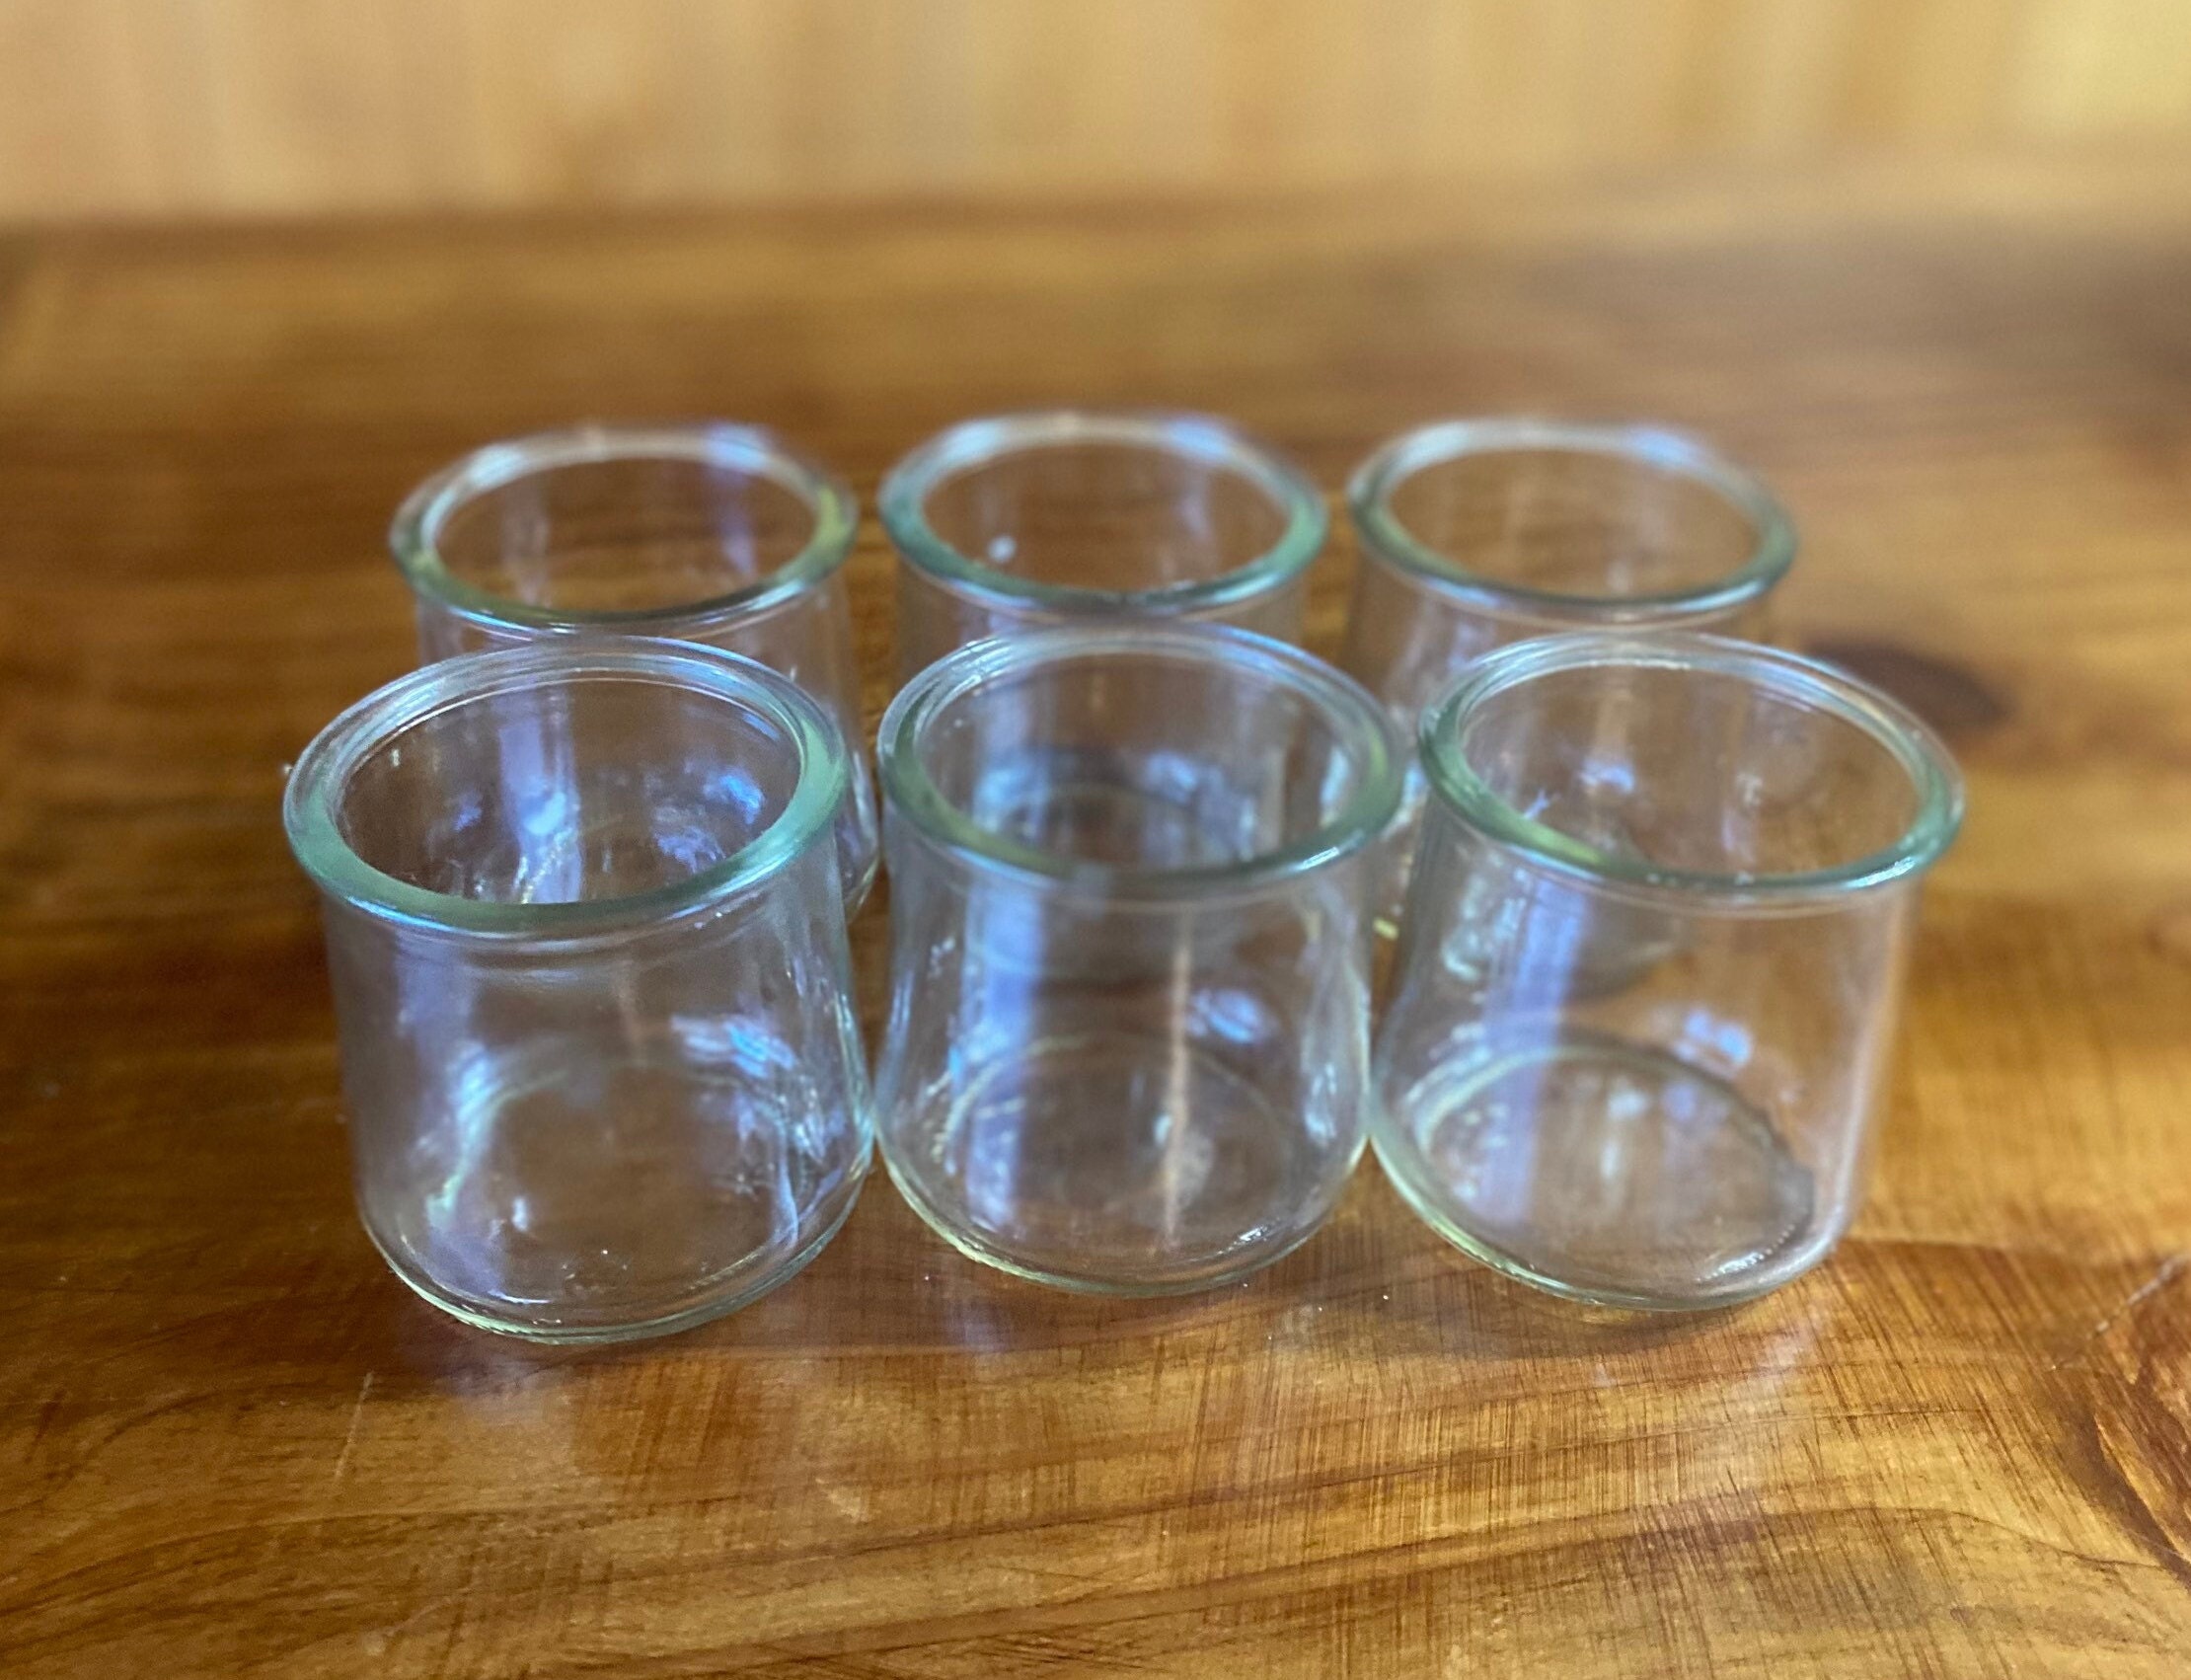 Hatrigo 4 oz Clear Glass Jars With Lids, 10-Piece Glass Yogurt Jars Set  with Color